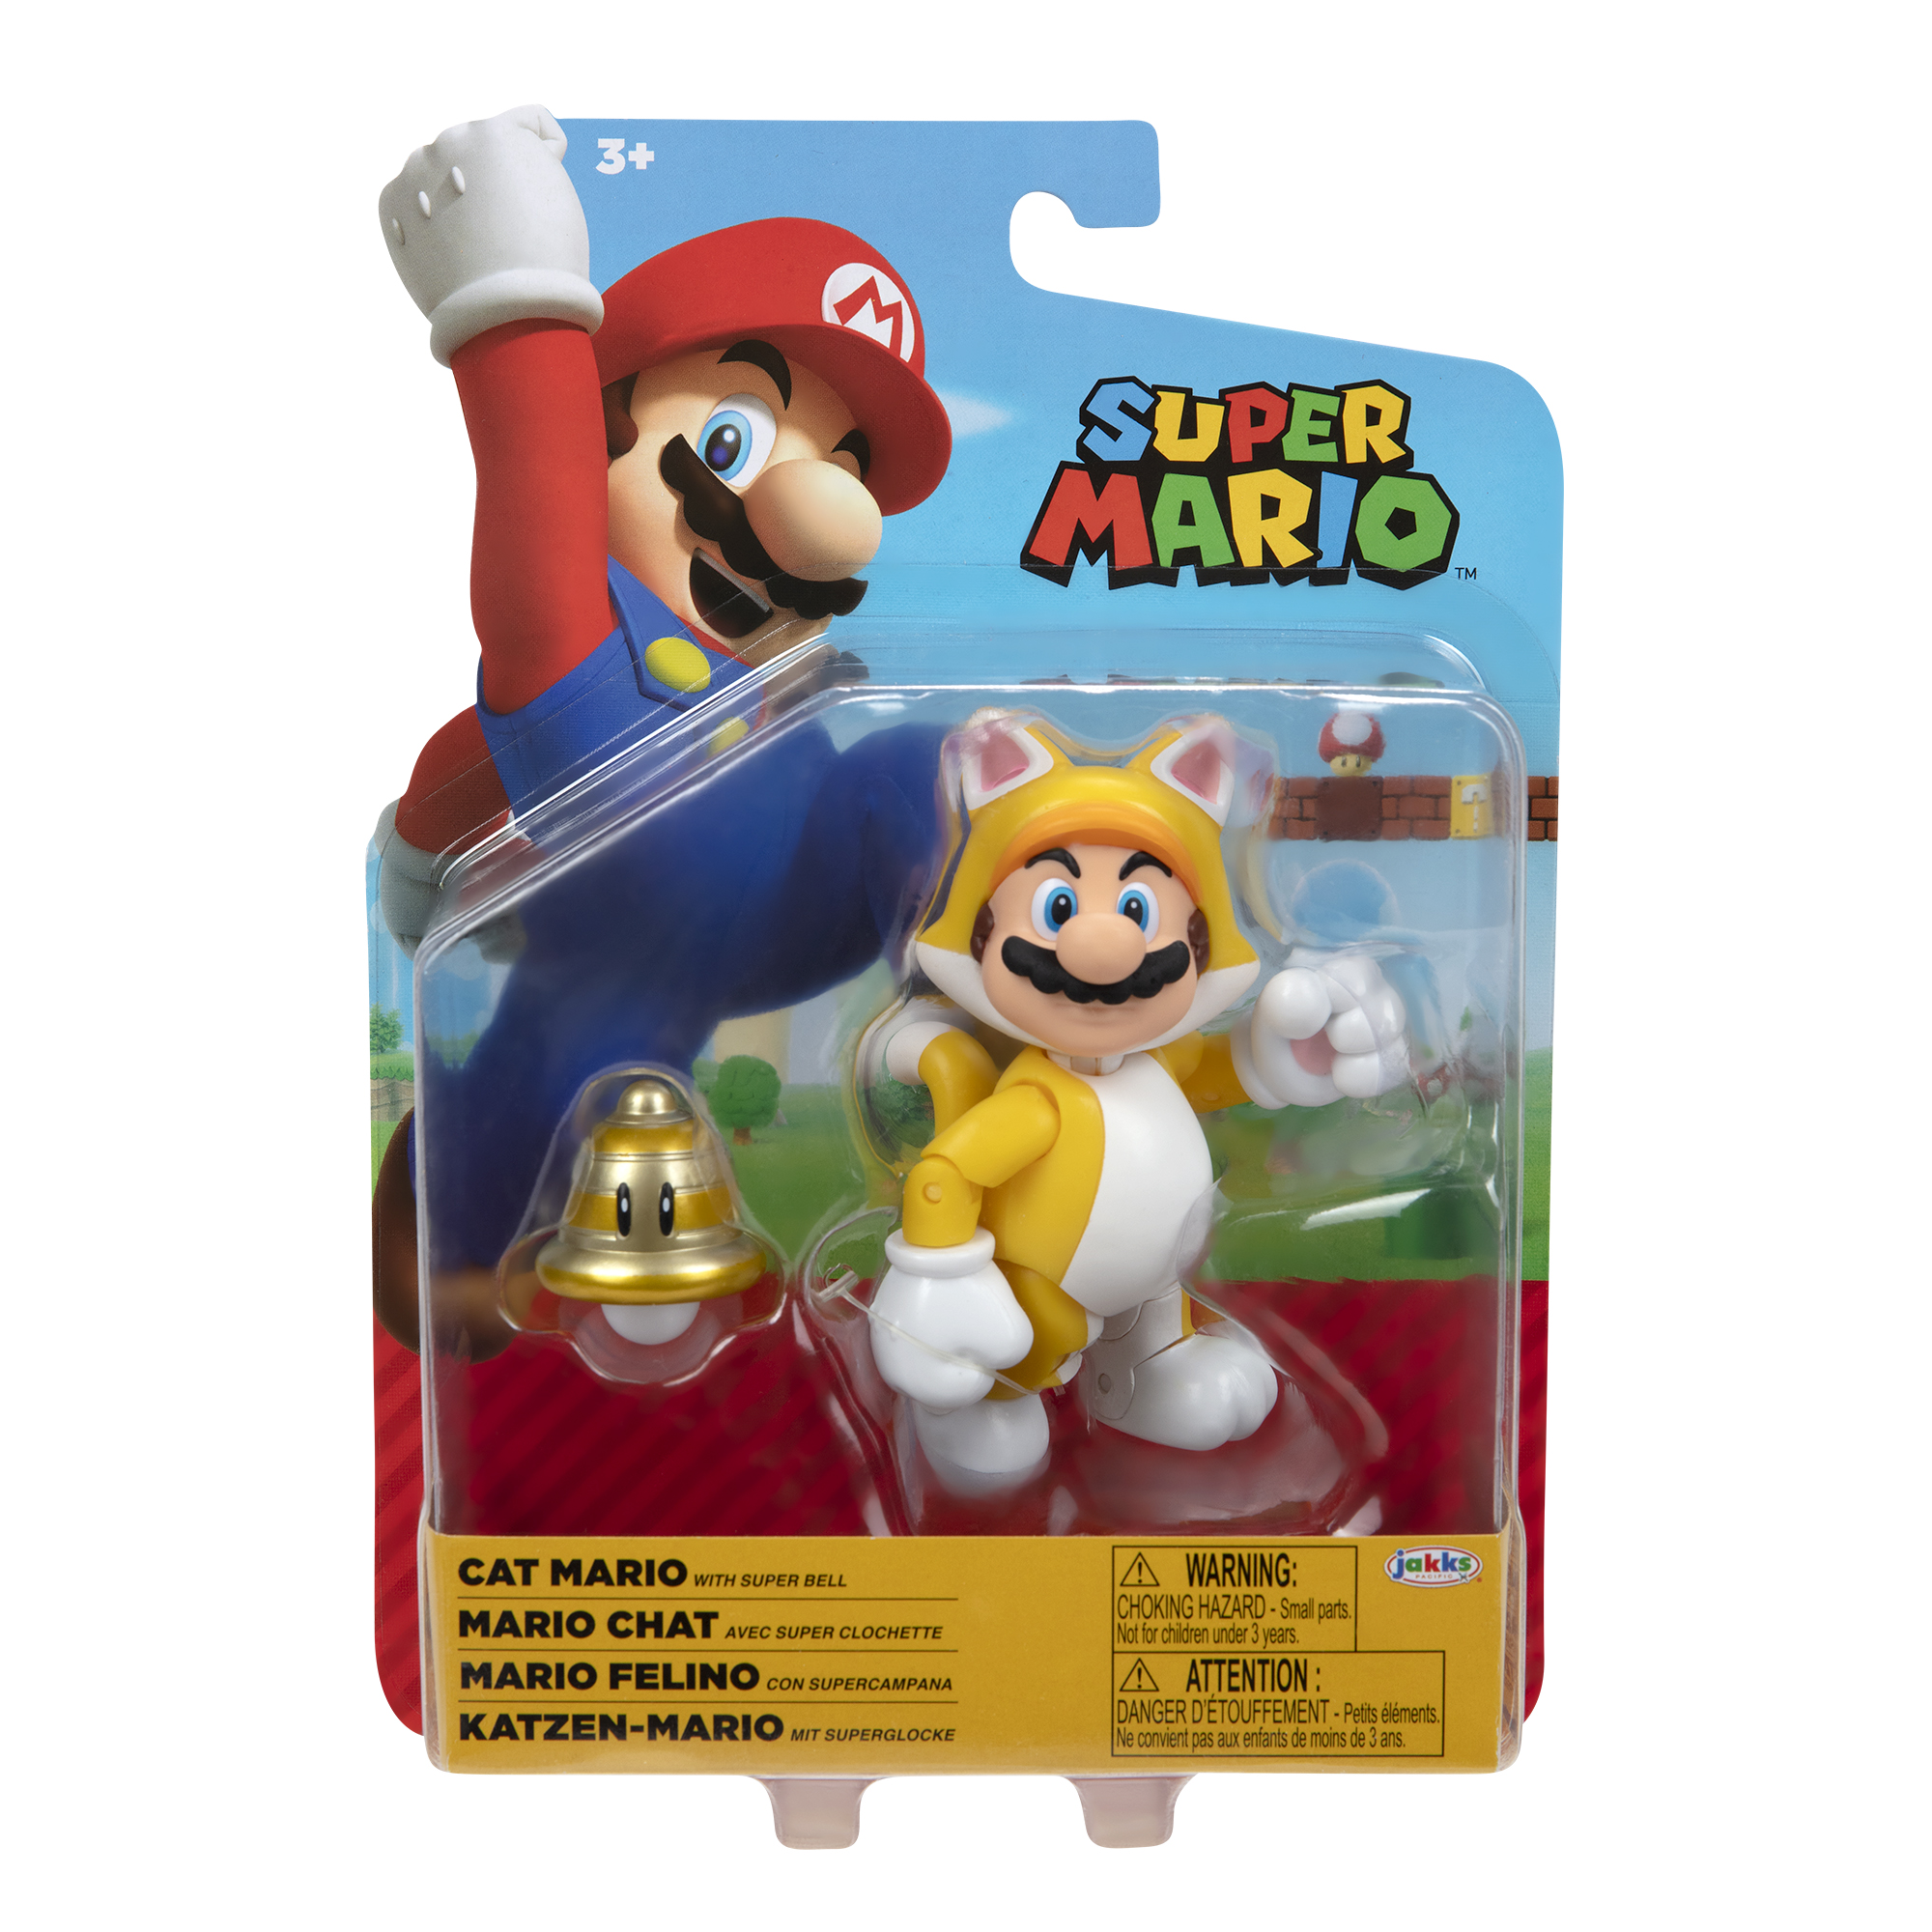 SUPER MARIO Nintendo Cat Mario 10 Superball, Mario with Super Spielware cm Figur